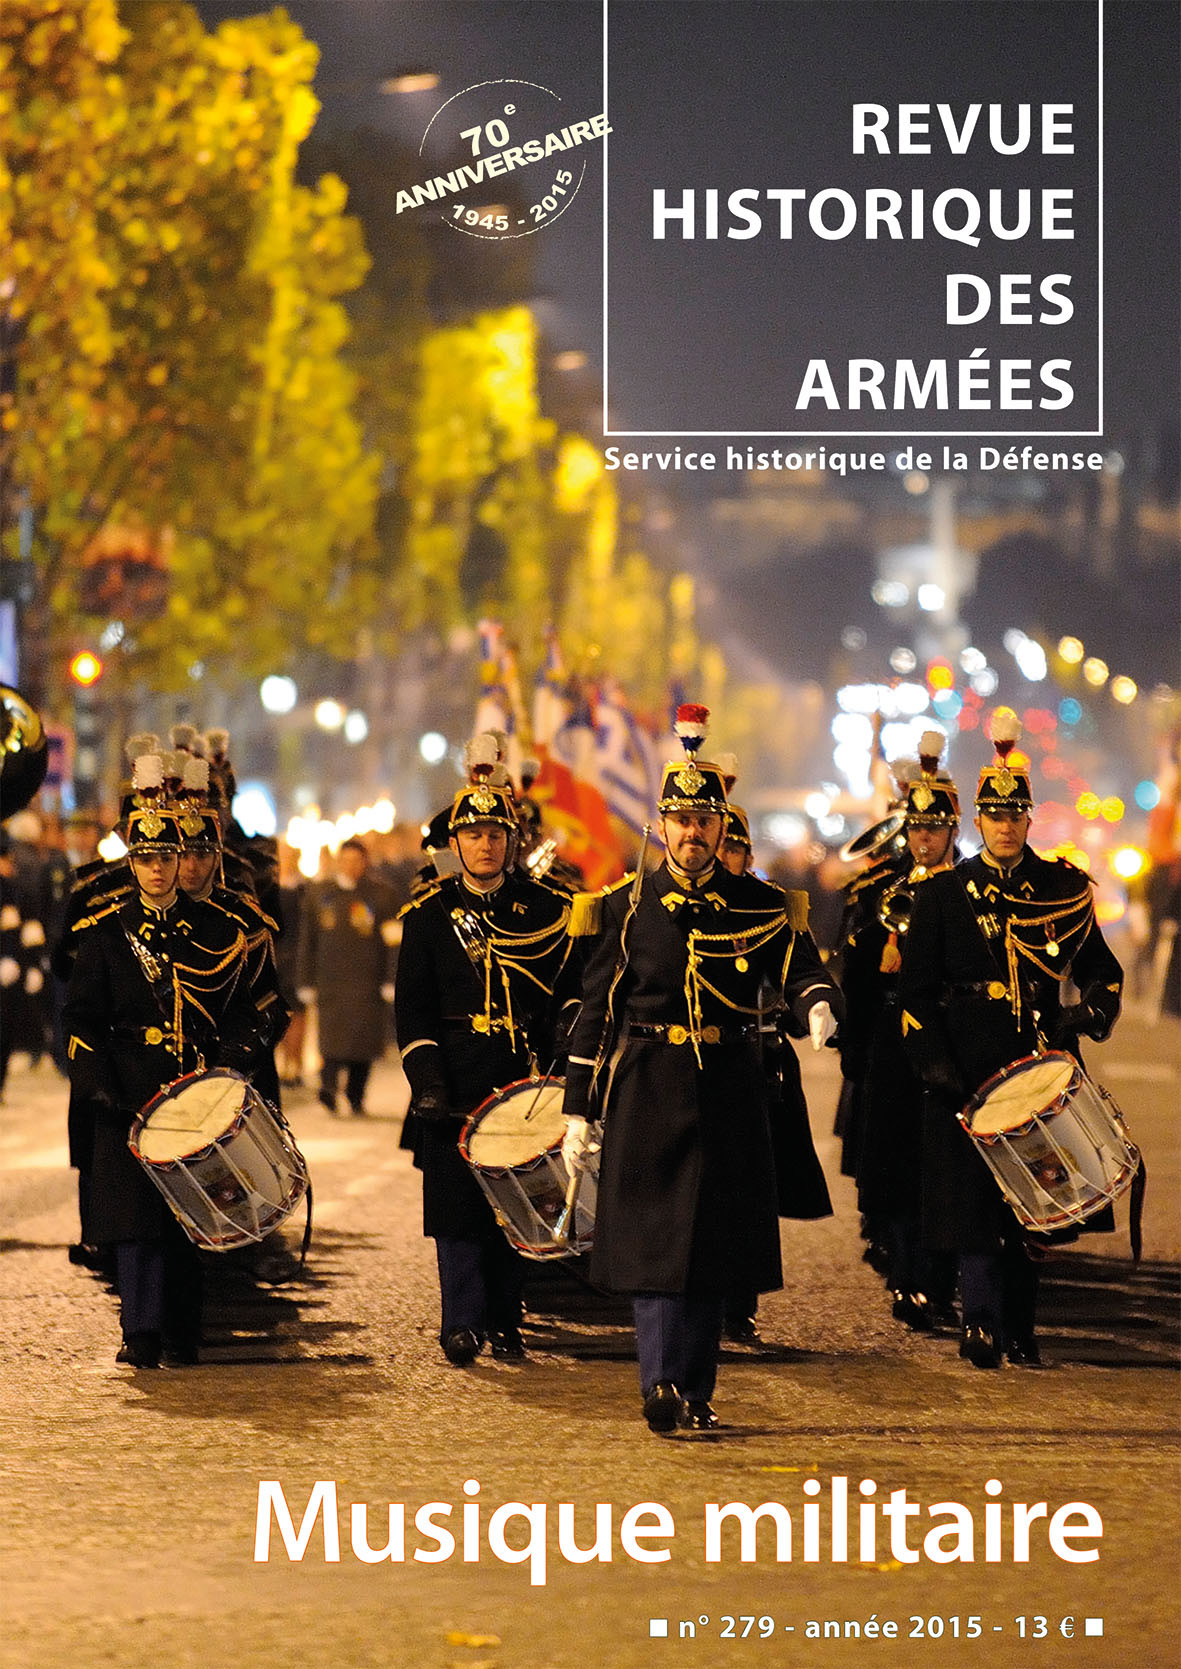 La musique militaire française : un patrimoine oublié (Revue Historique des  Armées n°279 de juillet 2015) — Theatrum Belli